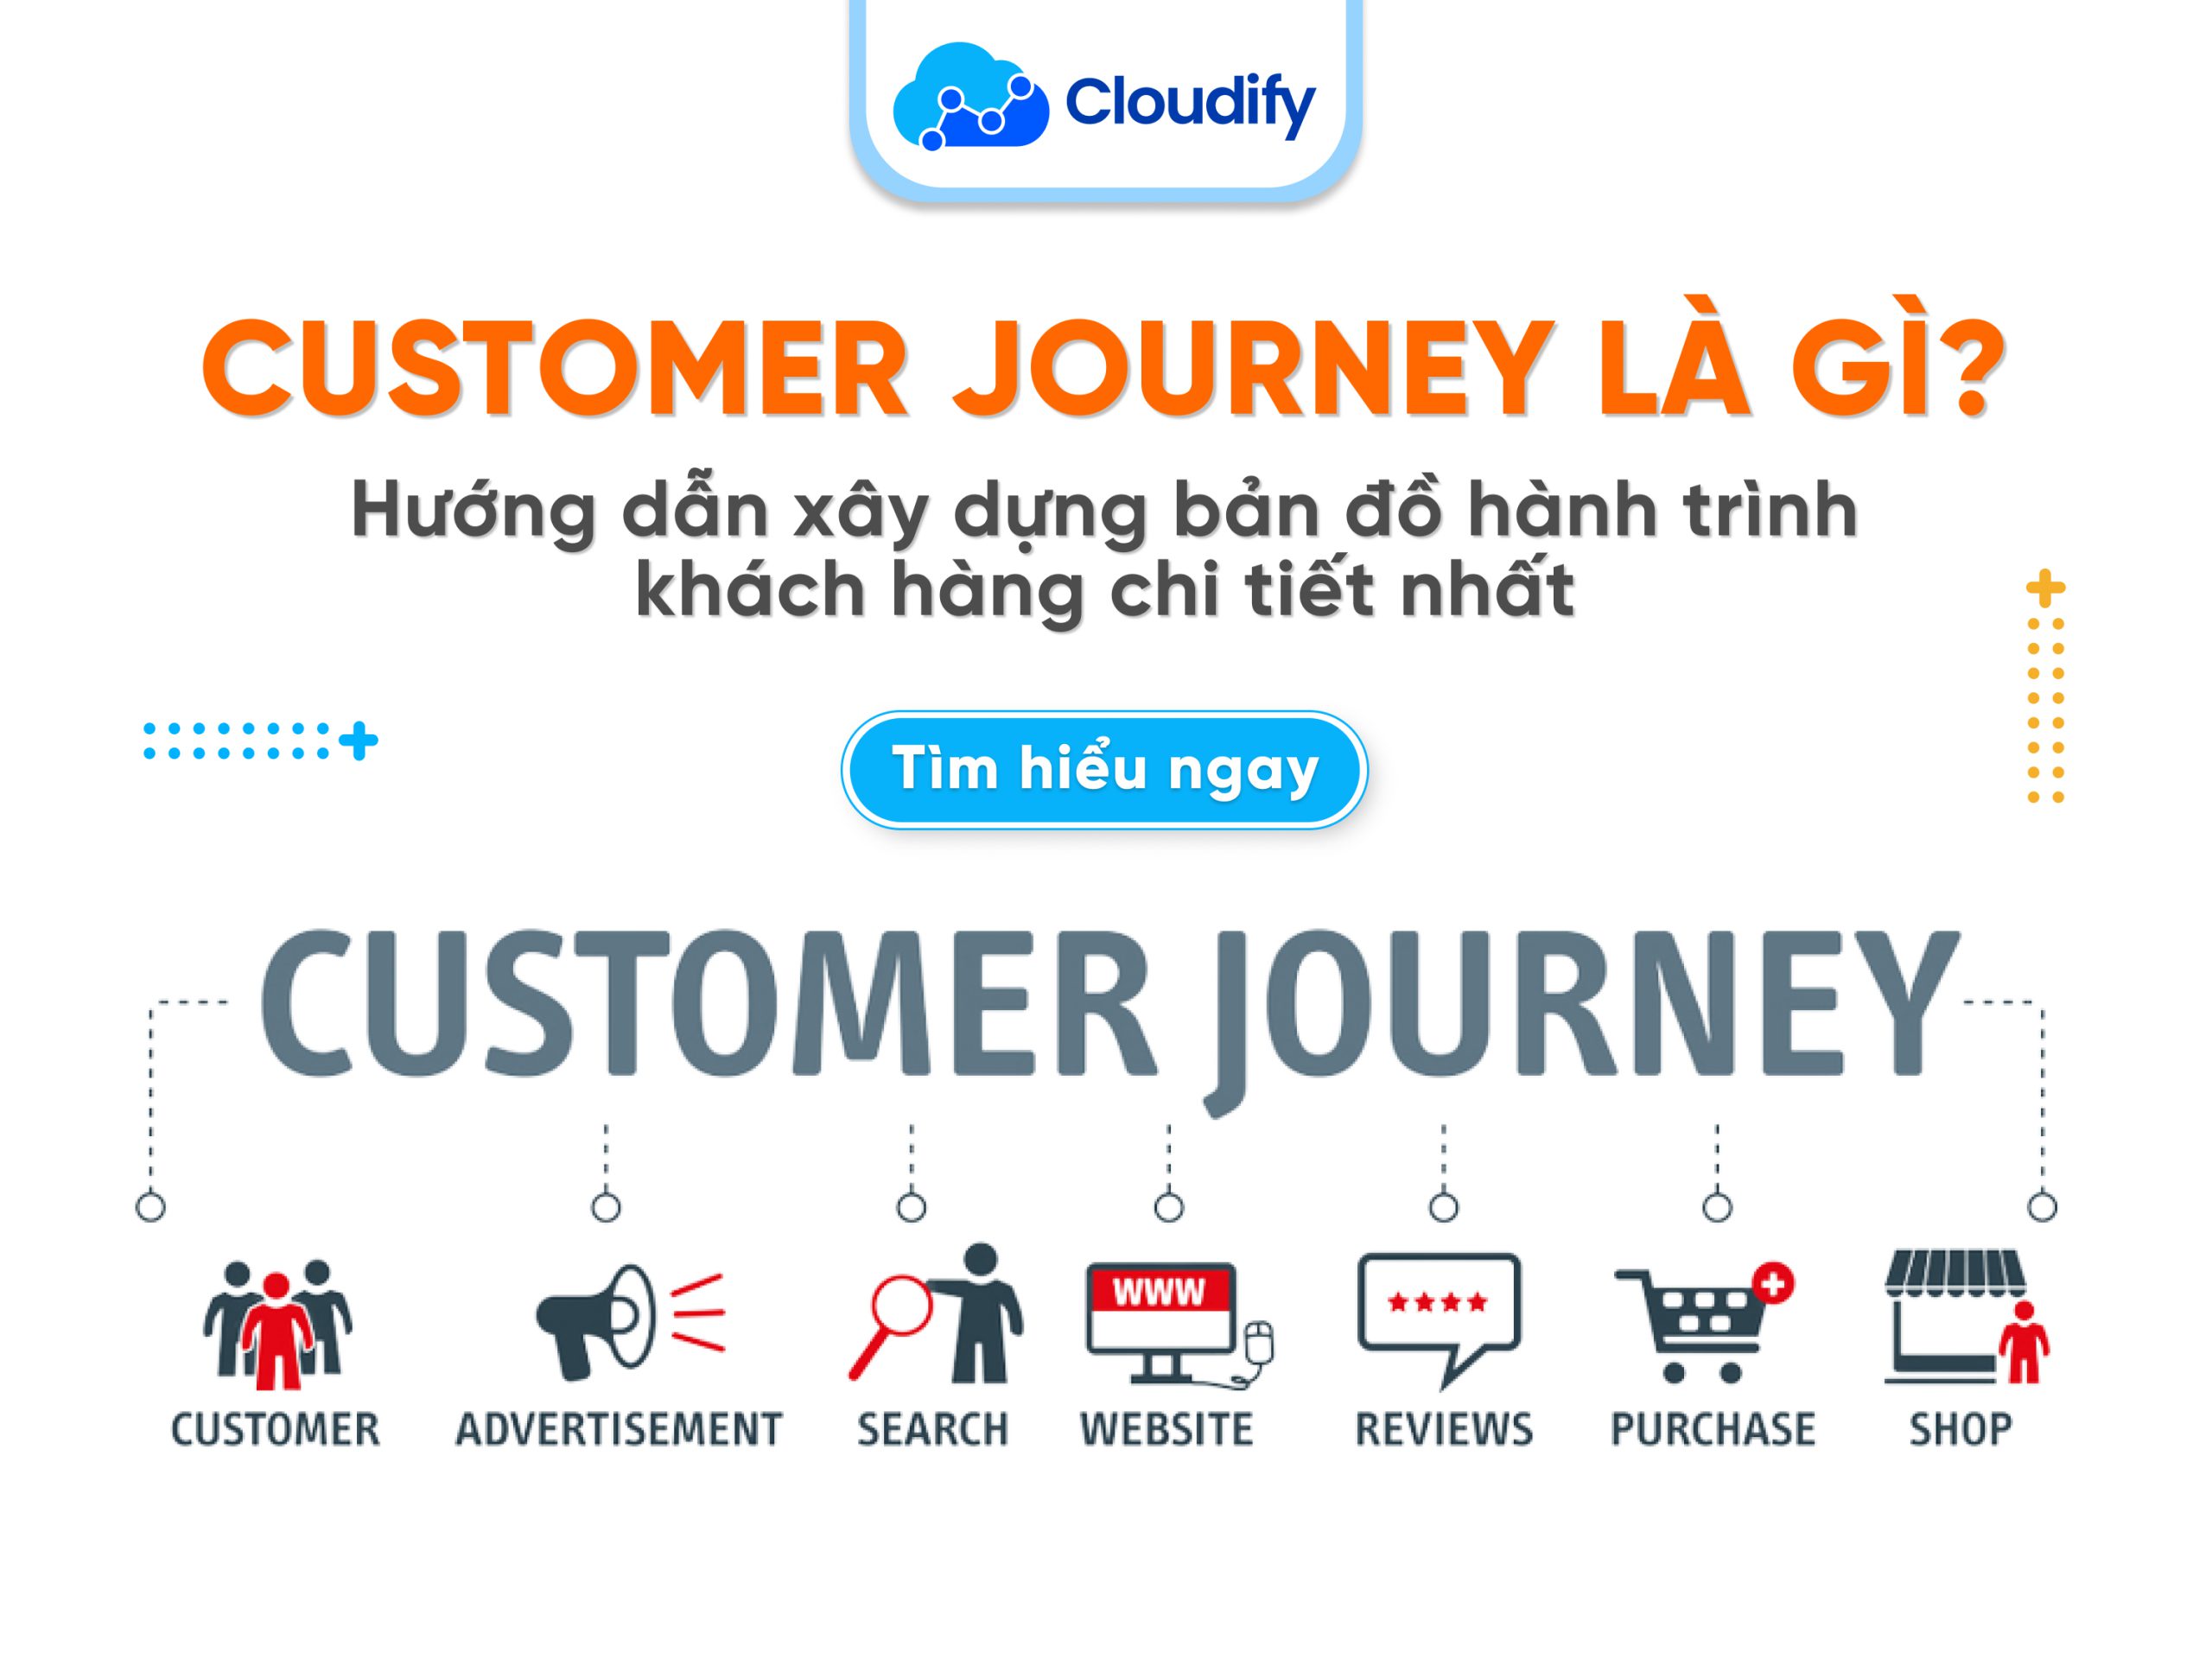 Customer Journey là gì? Hướng dẫn xây dựng bản đồ hành trình khách hàng chi tiết nhất